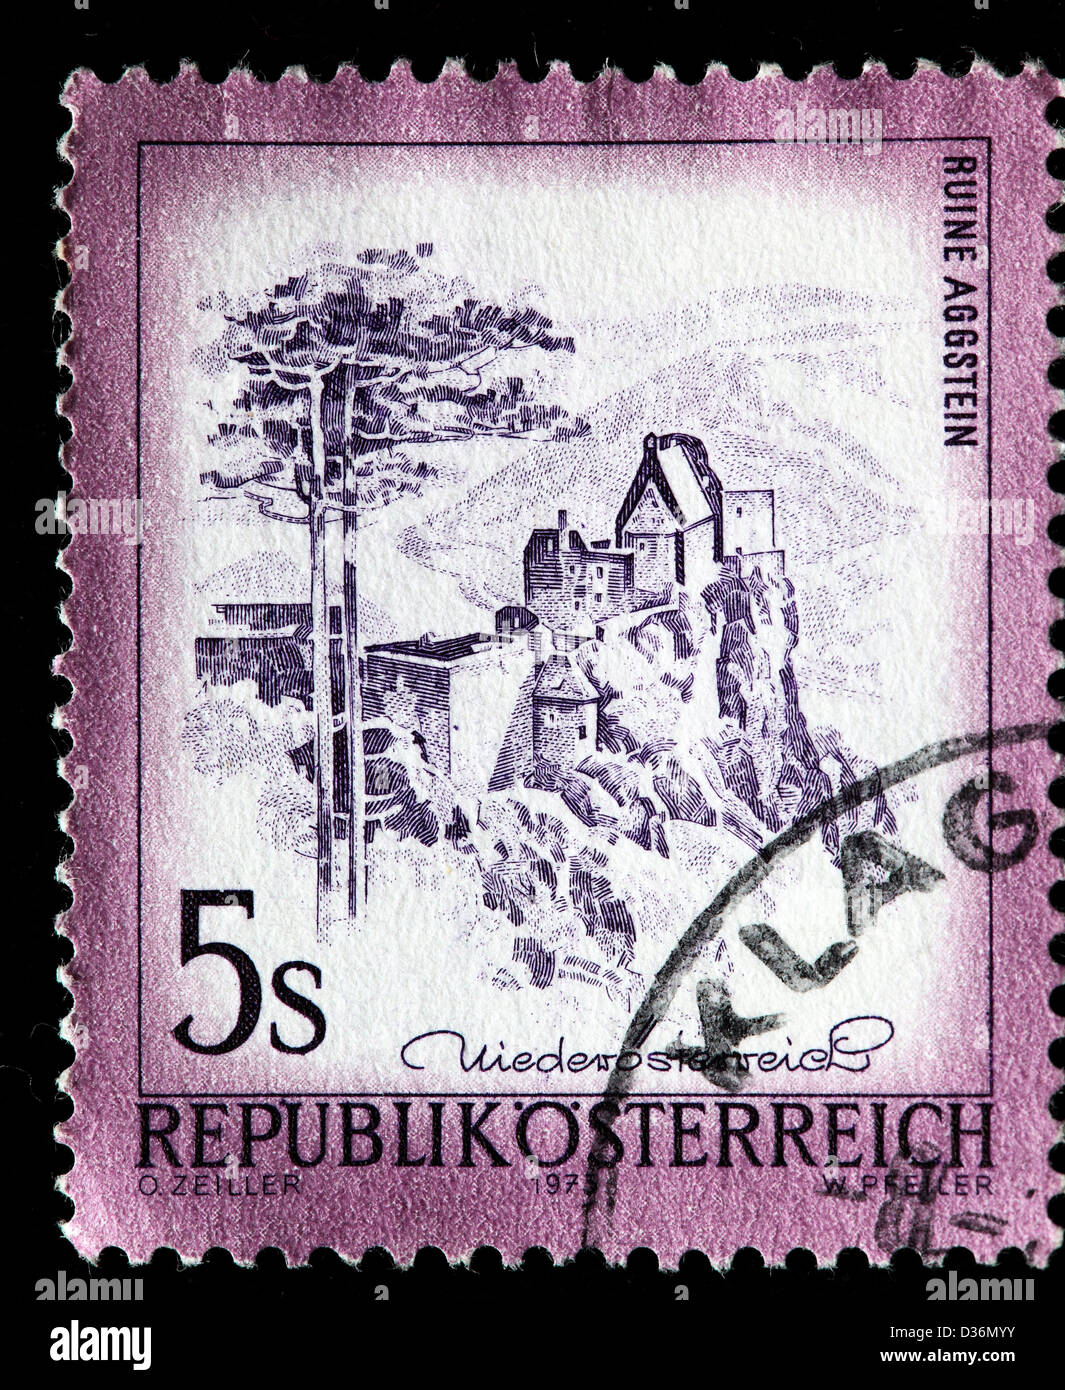 Aggstein Castle, Lower Austria, postage stamp, Austria, 1975 Stock Photo